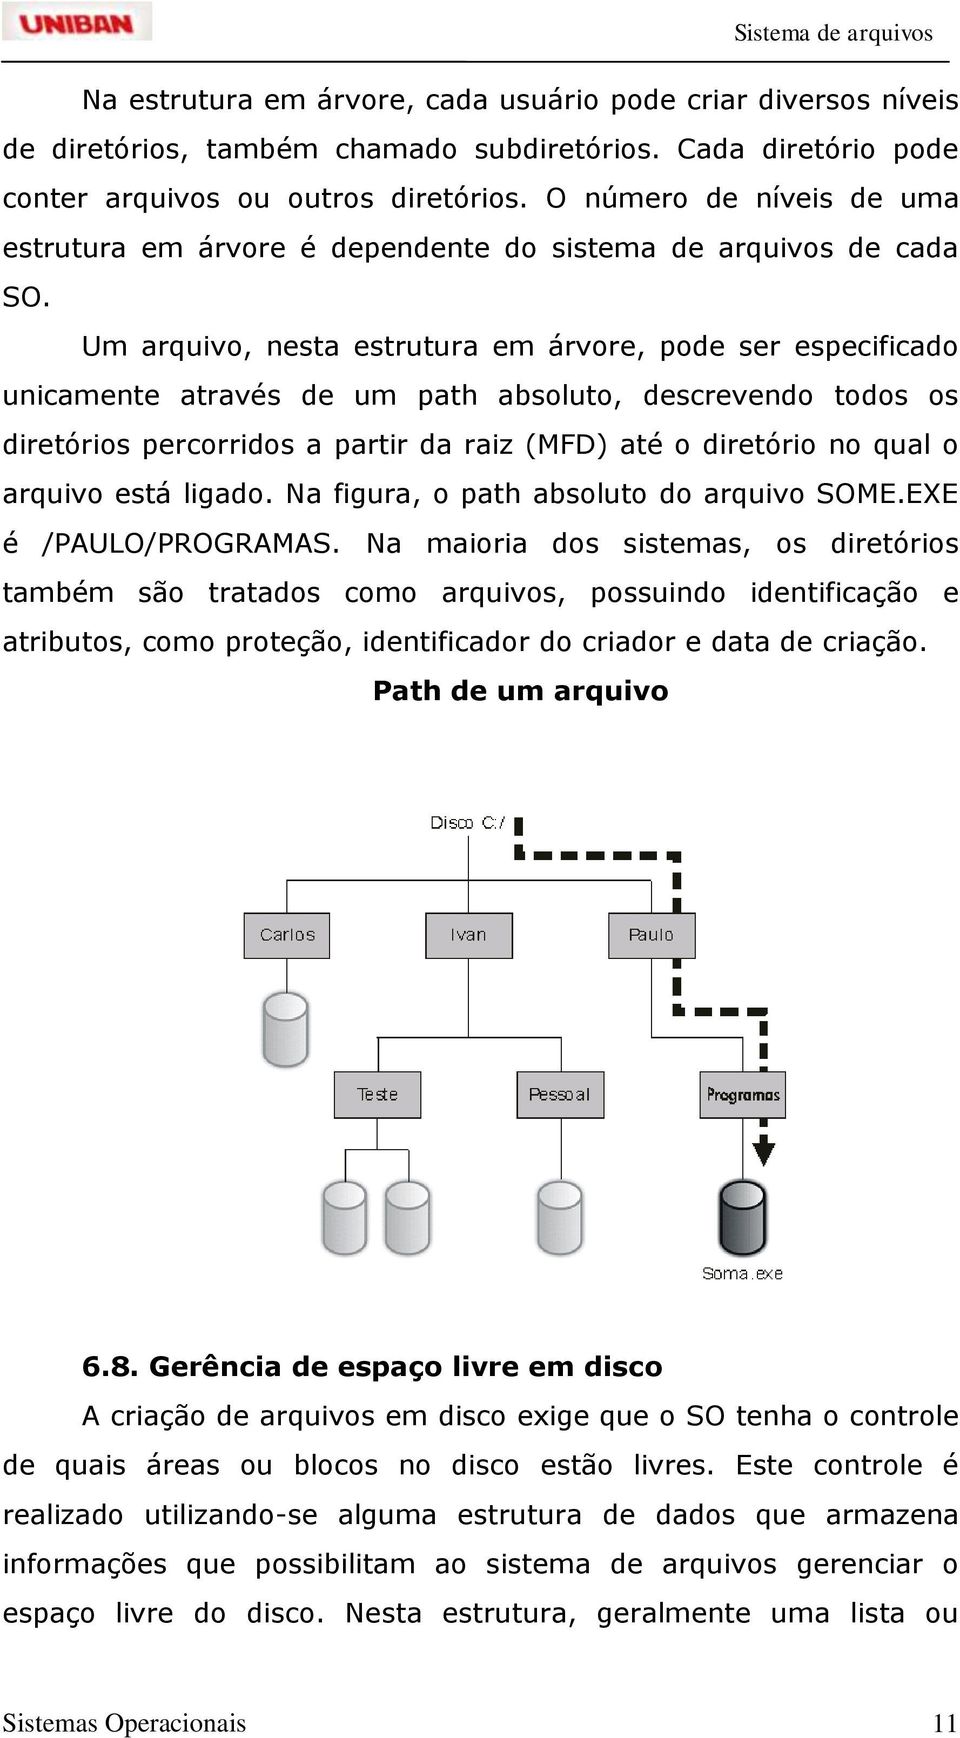 Um arquivo, nesta estrutura em árvore, pode ser especificado unicamente através de um path absoluto, descrevendo todos os diretórios percorridos a partir da raiz (MFD) até o diretório no qual o